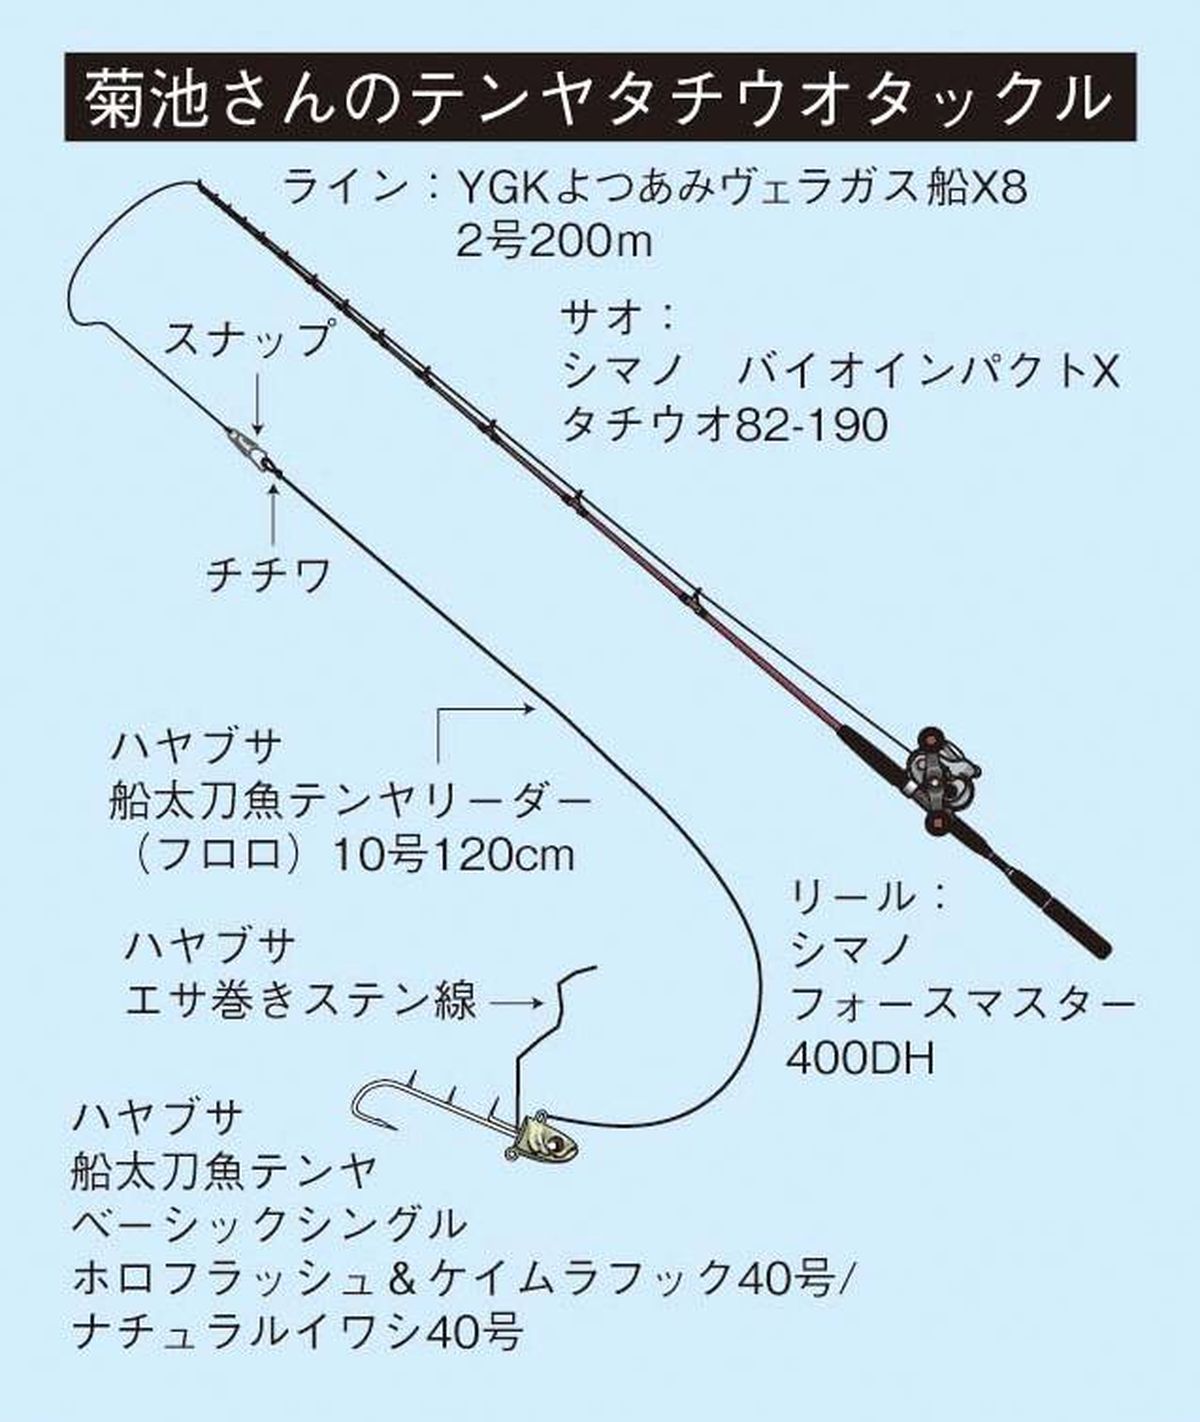 大阪湾のテンヤタチウオ釣り徹底解説 道具から誘い方まで 魚種別釣りガイド